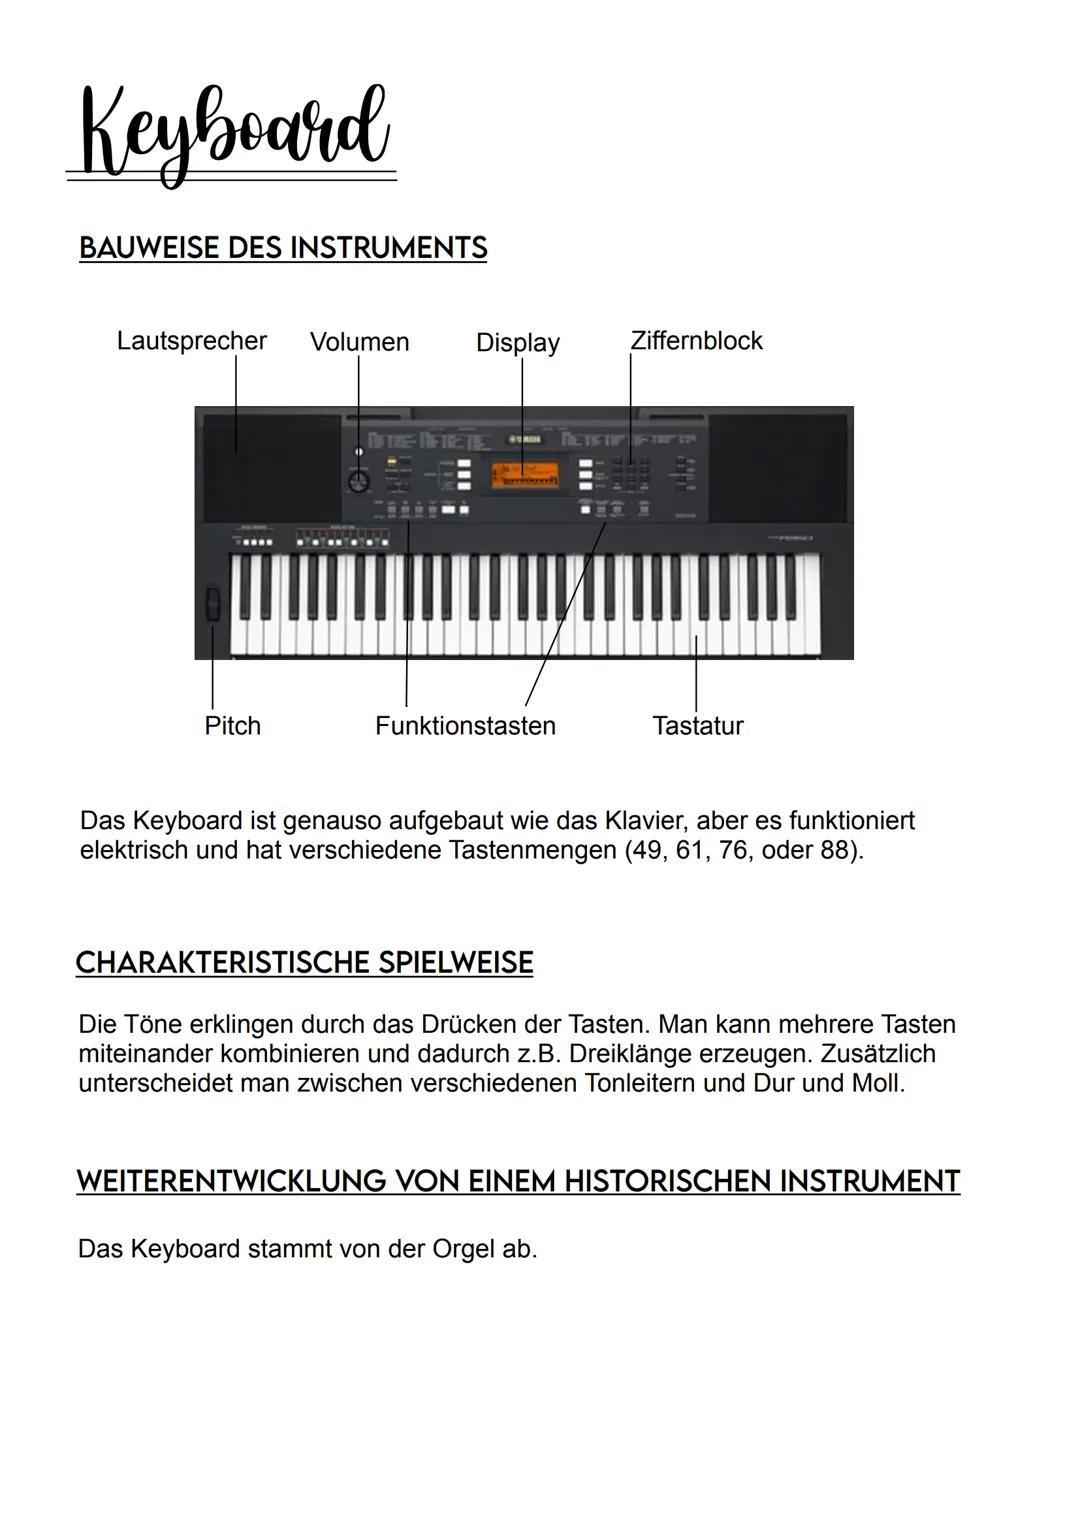 E-Gitarre
BAUWEISE DES INSTRUMENTS
Stimmmechaniken-
Sattel
Hals/Griffbrett
Befestigungsknöpfe
für den Gitarrengurt
Tonabnehmer in
Halspositi